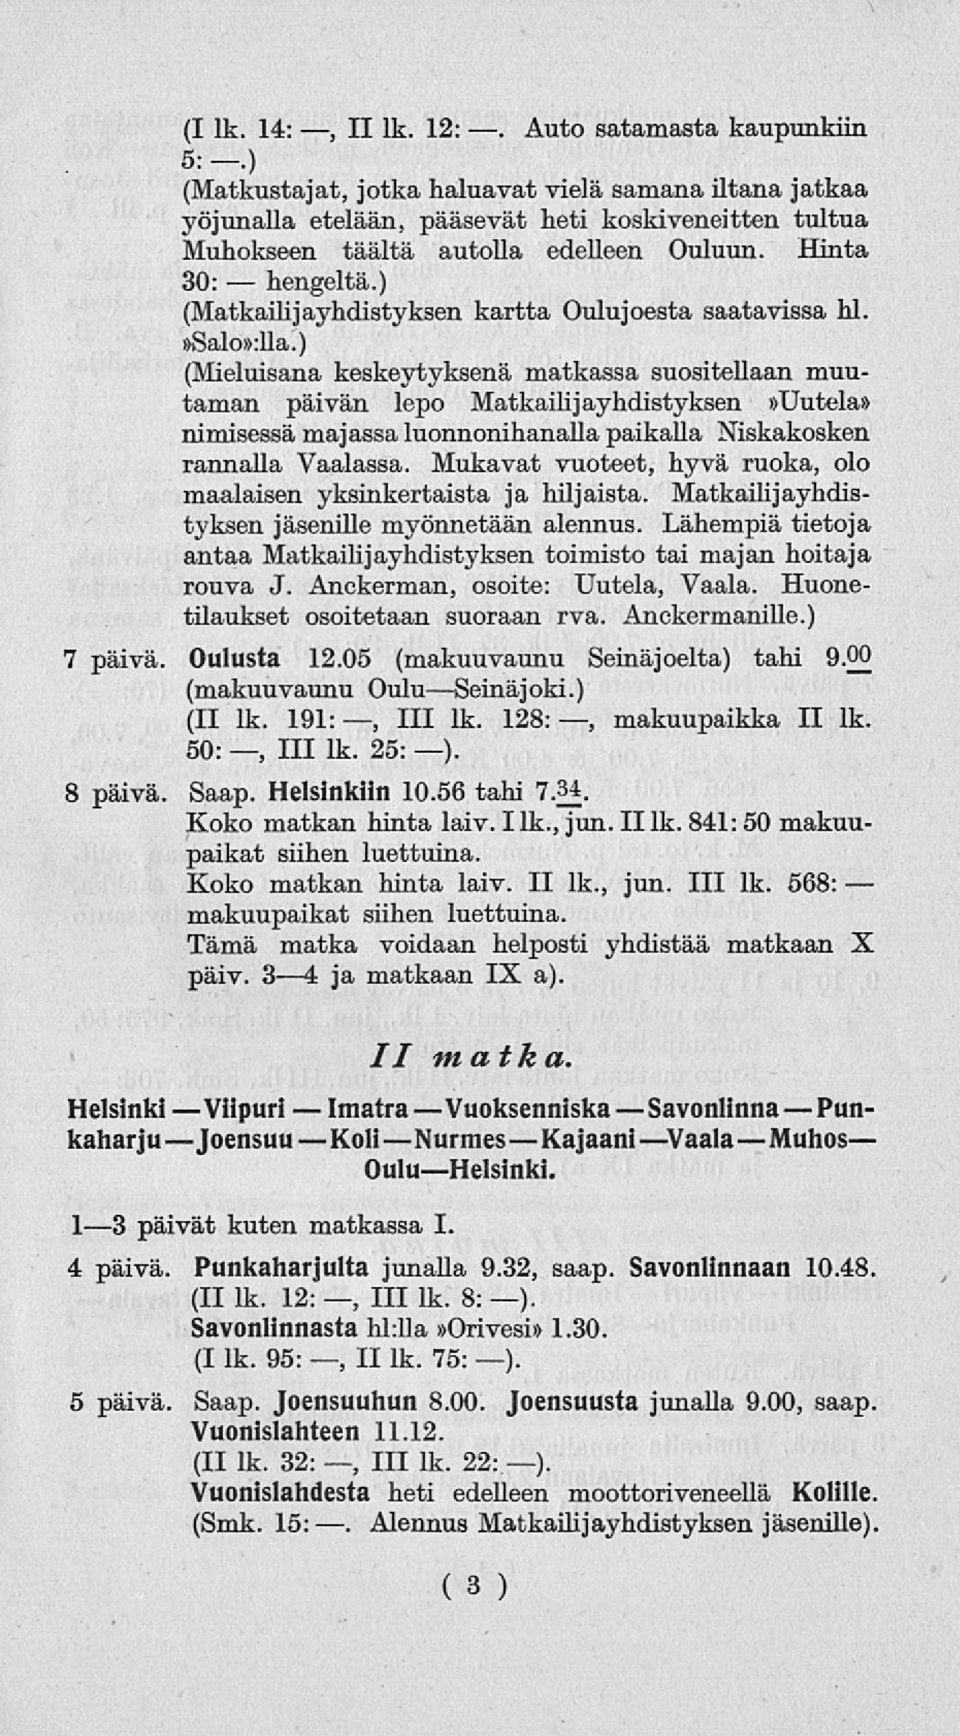 ) (Matkailijayhdistyksen kartta Oulujoesta saatavissa hl.»salo»:lla.